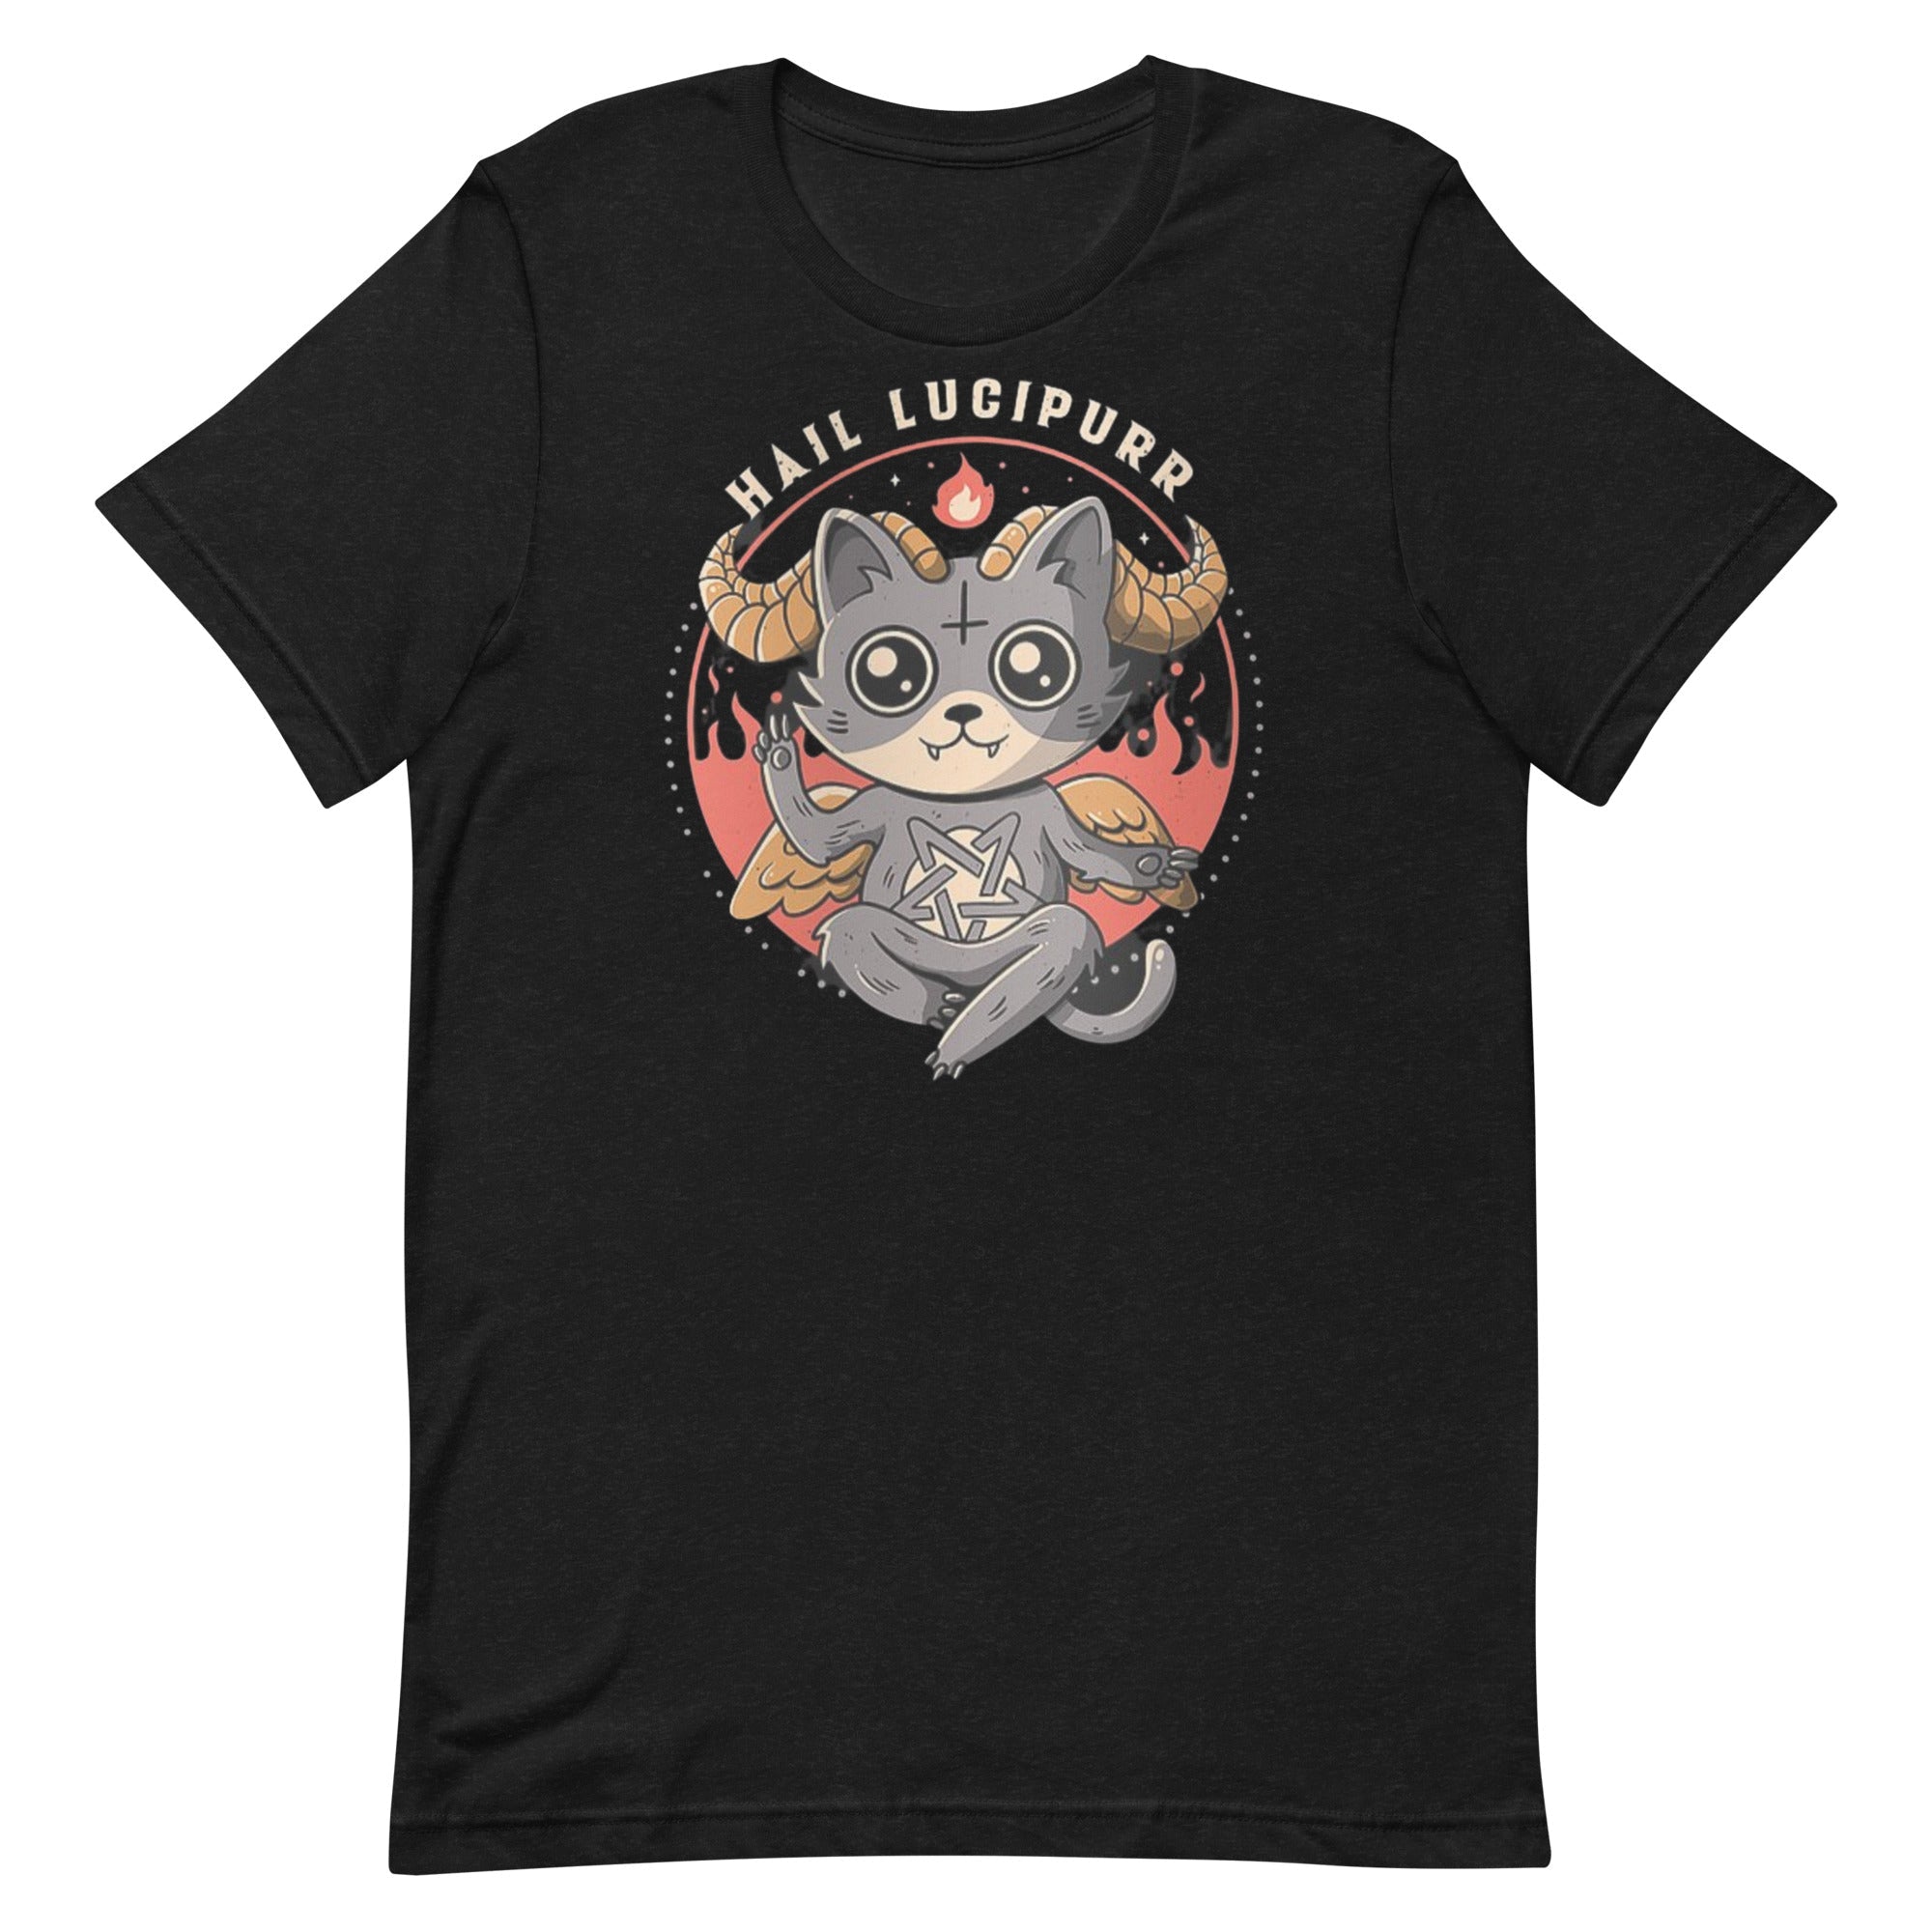 Satanic cat shirt